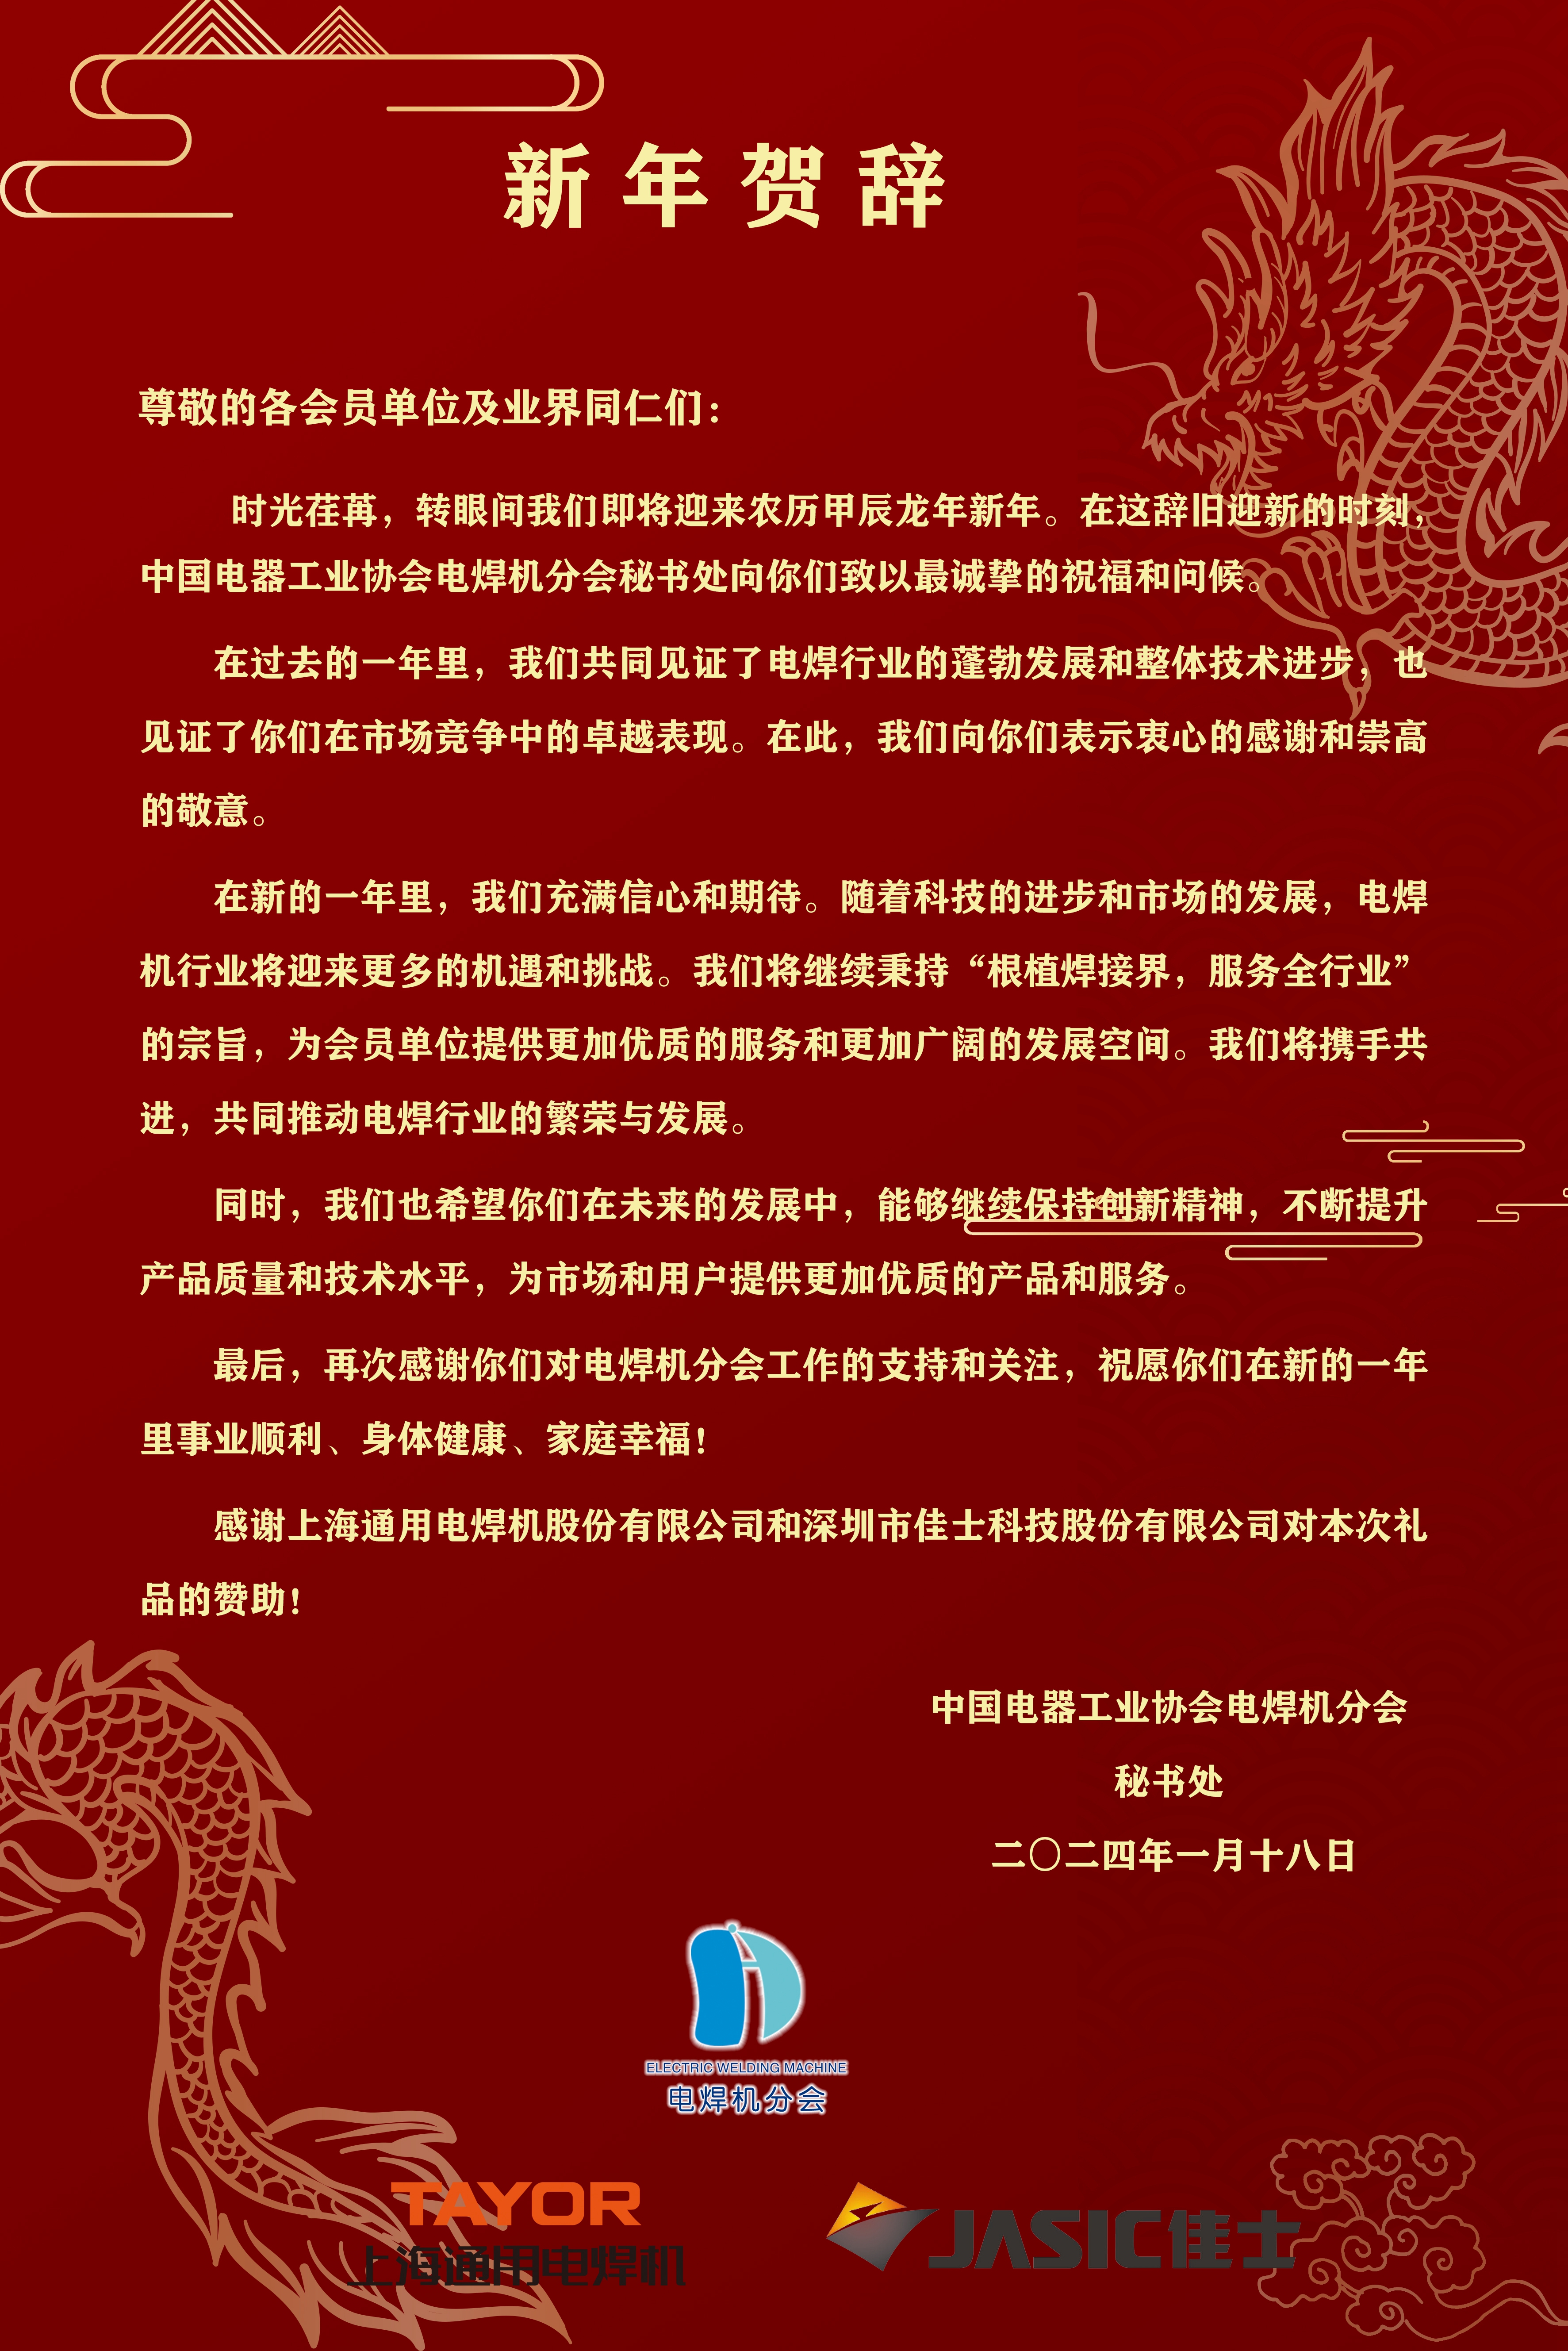 中国电器工业协会电焊机分会新年贺词